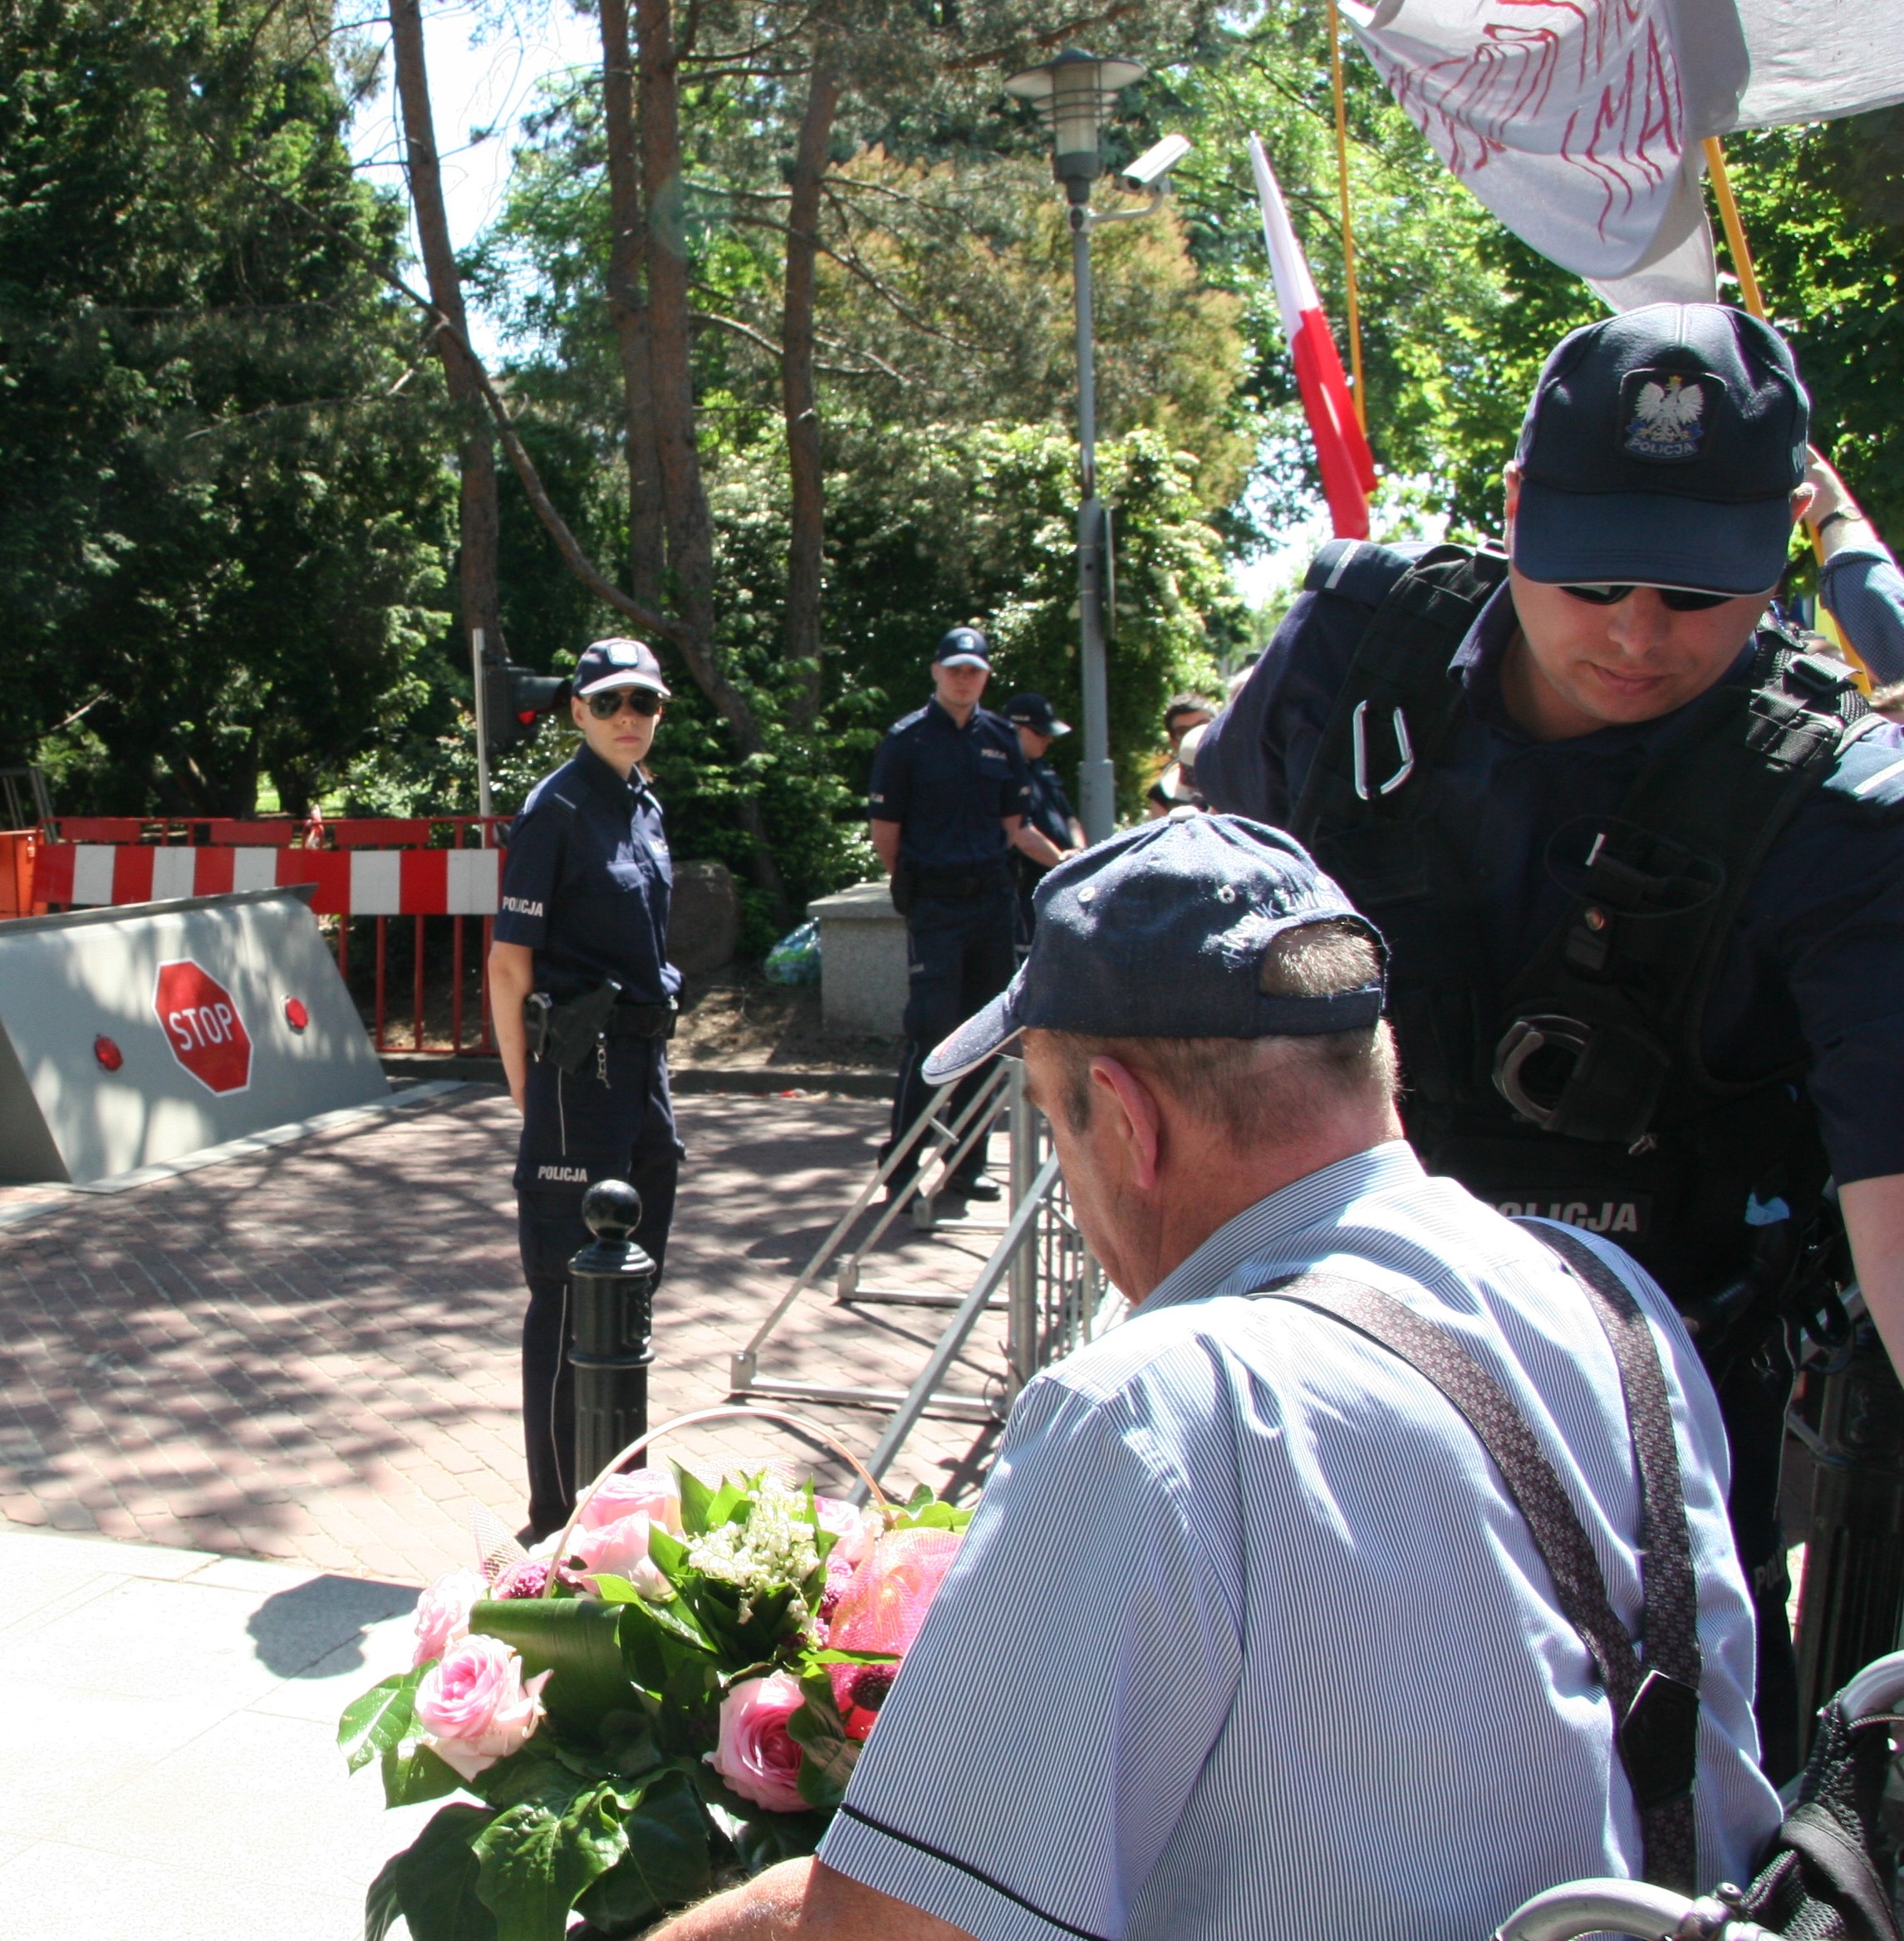 Przekazanie kwiatów dla strajkujących doszło do skutku